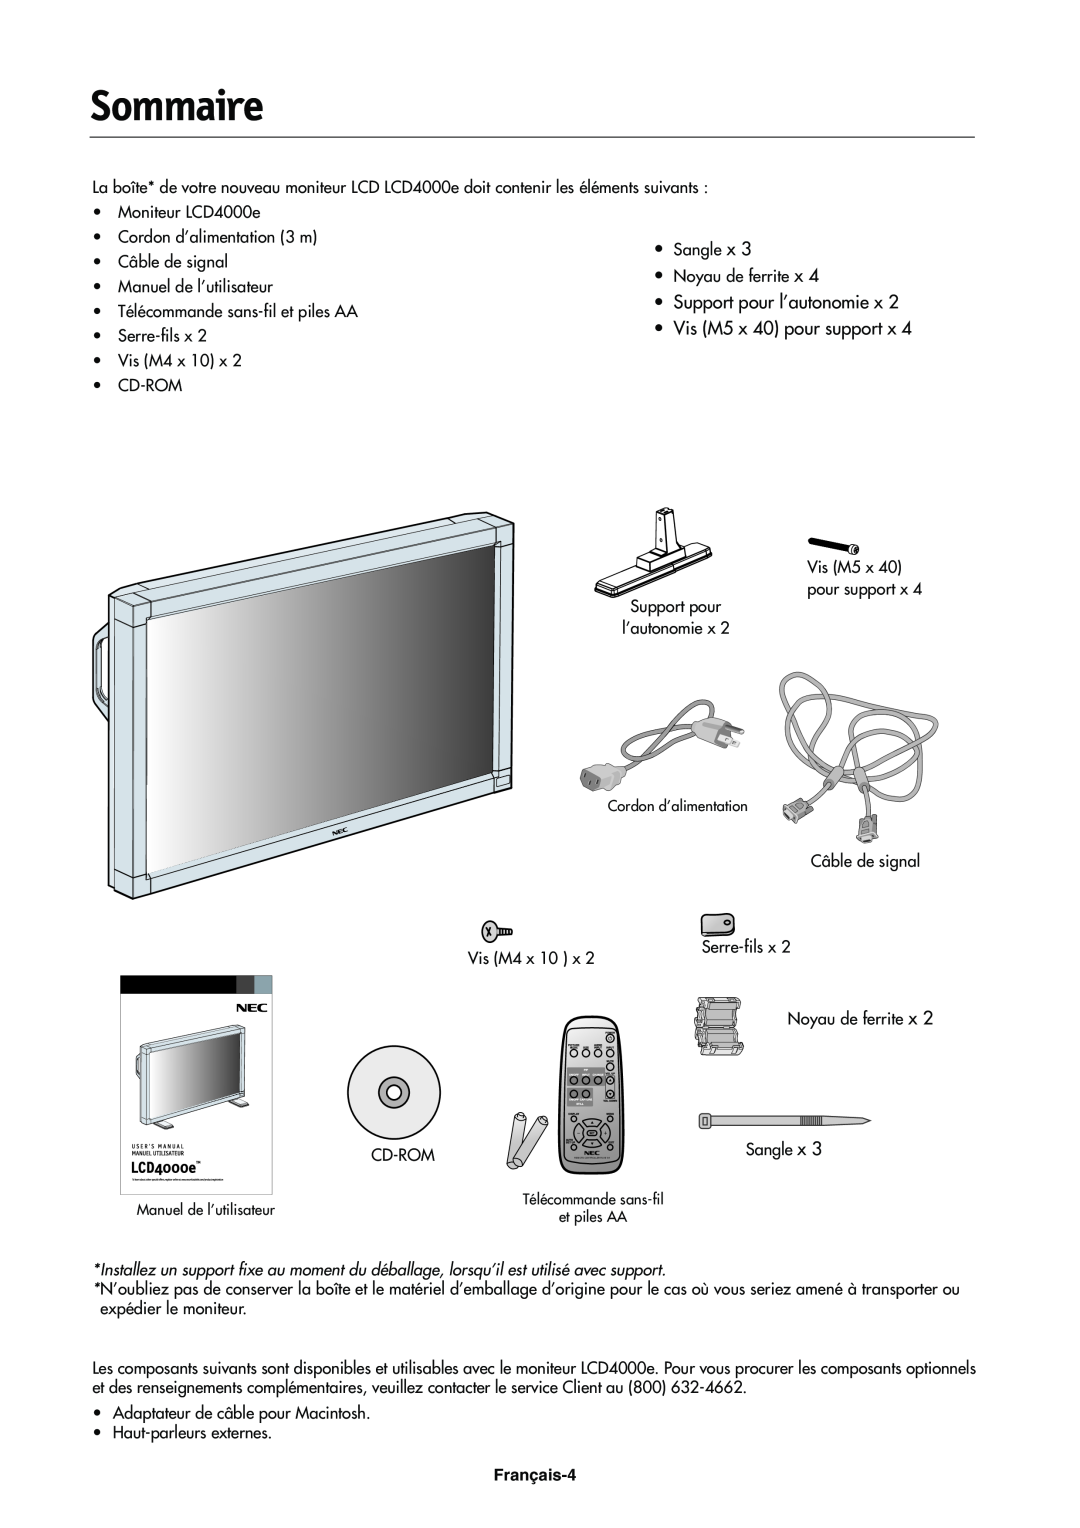 NEC LCD4000e manual Sommaire, •Support pour l’autonomie x, •Vis M5 x 40 pour support x, Français-4 